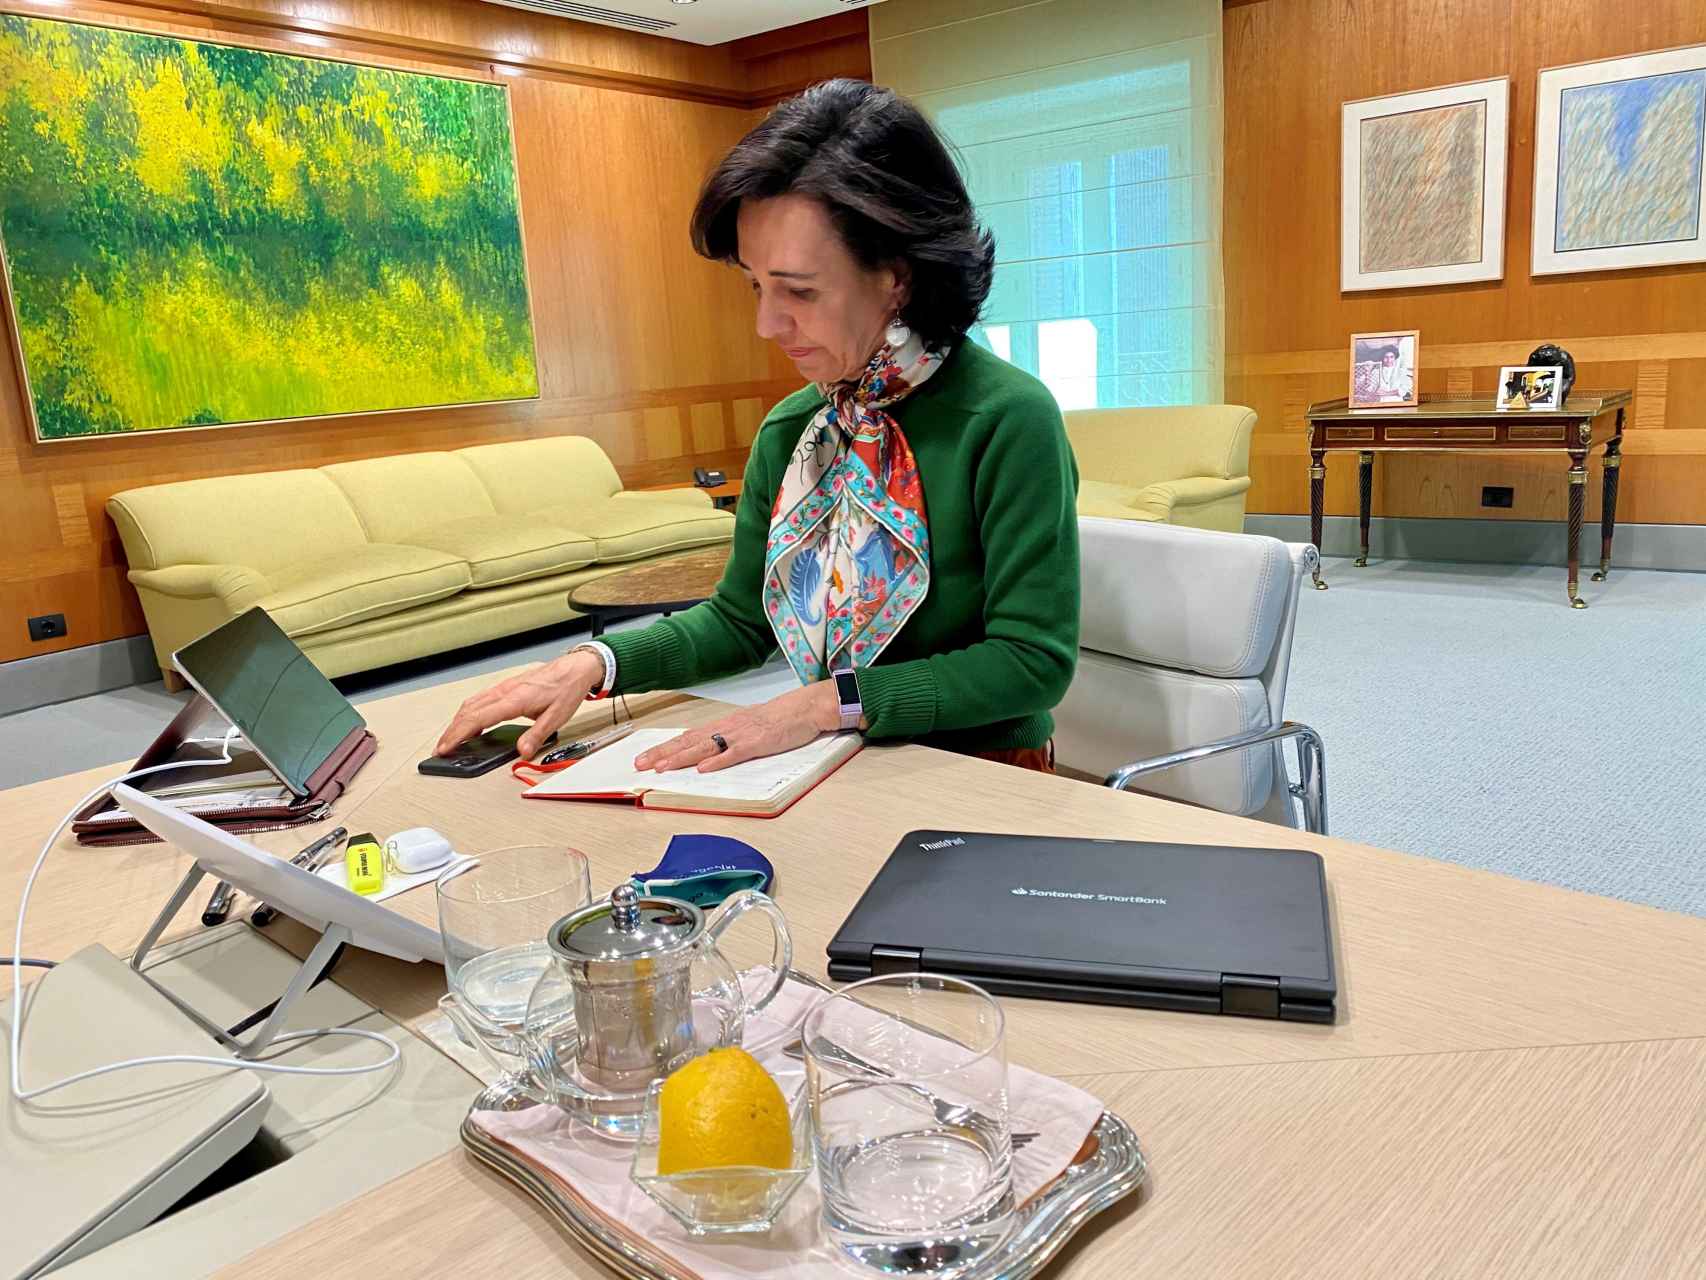 La presidenta del Banco Santander, trabajando en la mesa de su despacho.